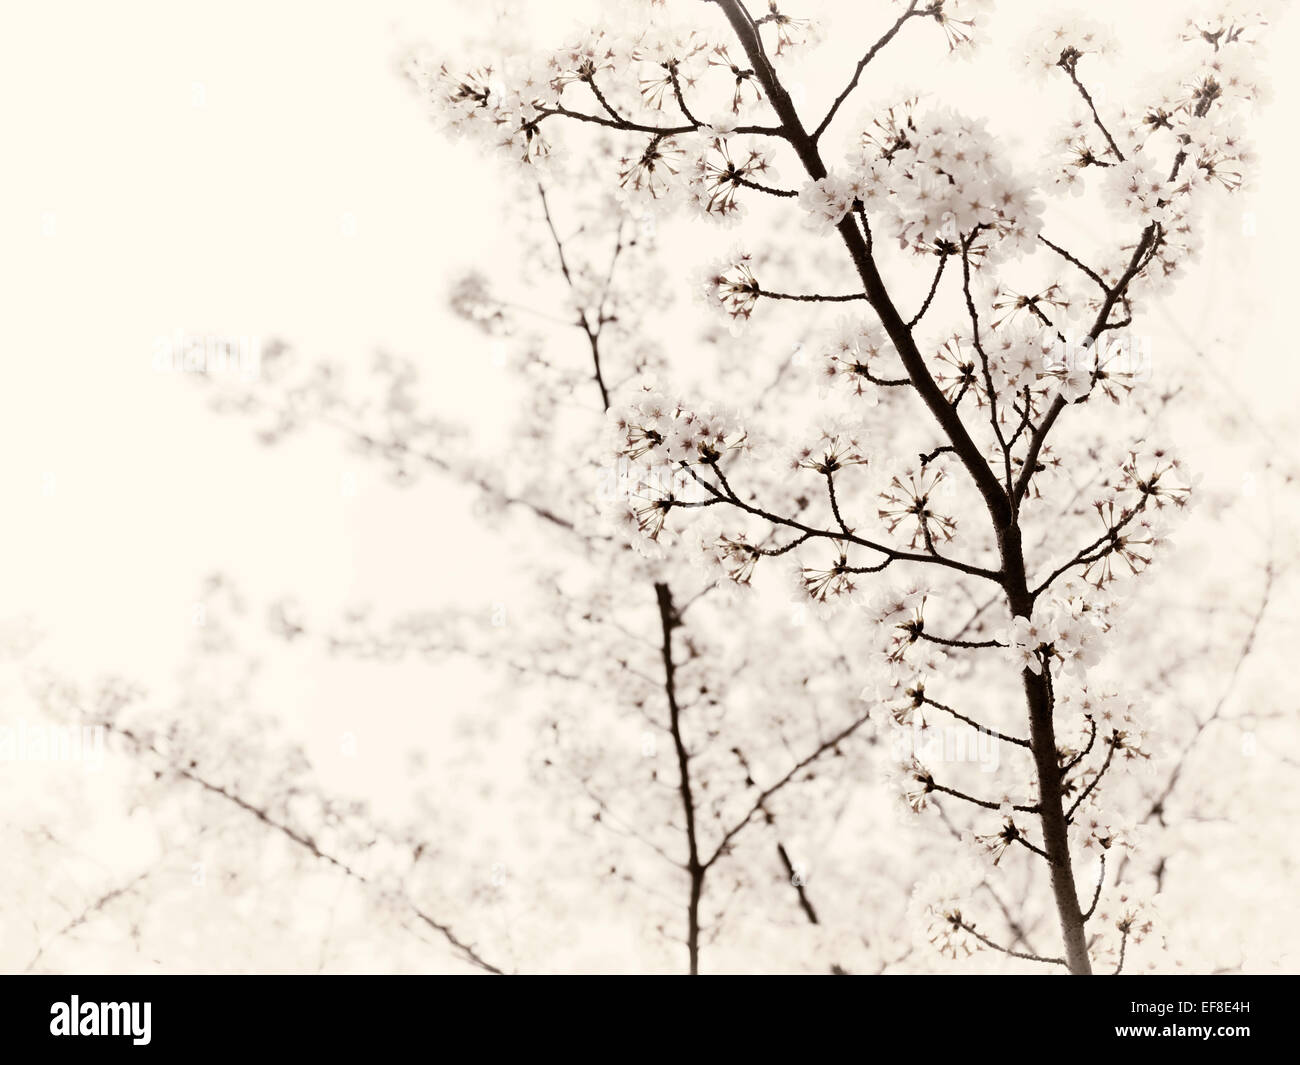 Künstlerische Closeup Kirschblüte über strahlend weißen Himmel. Kyoto, Japan. Schwarzweiss Sepia getönt Stockfoto